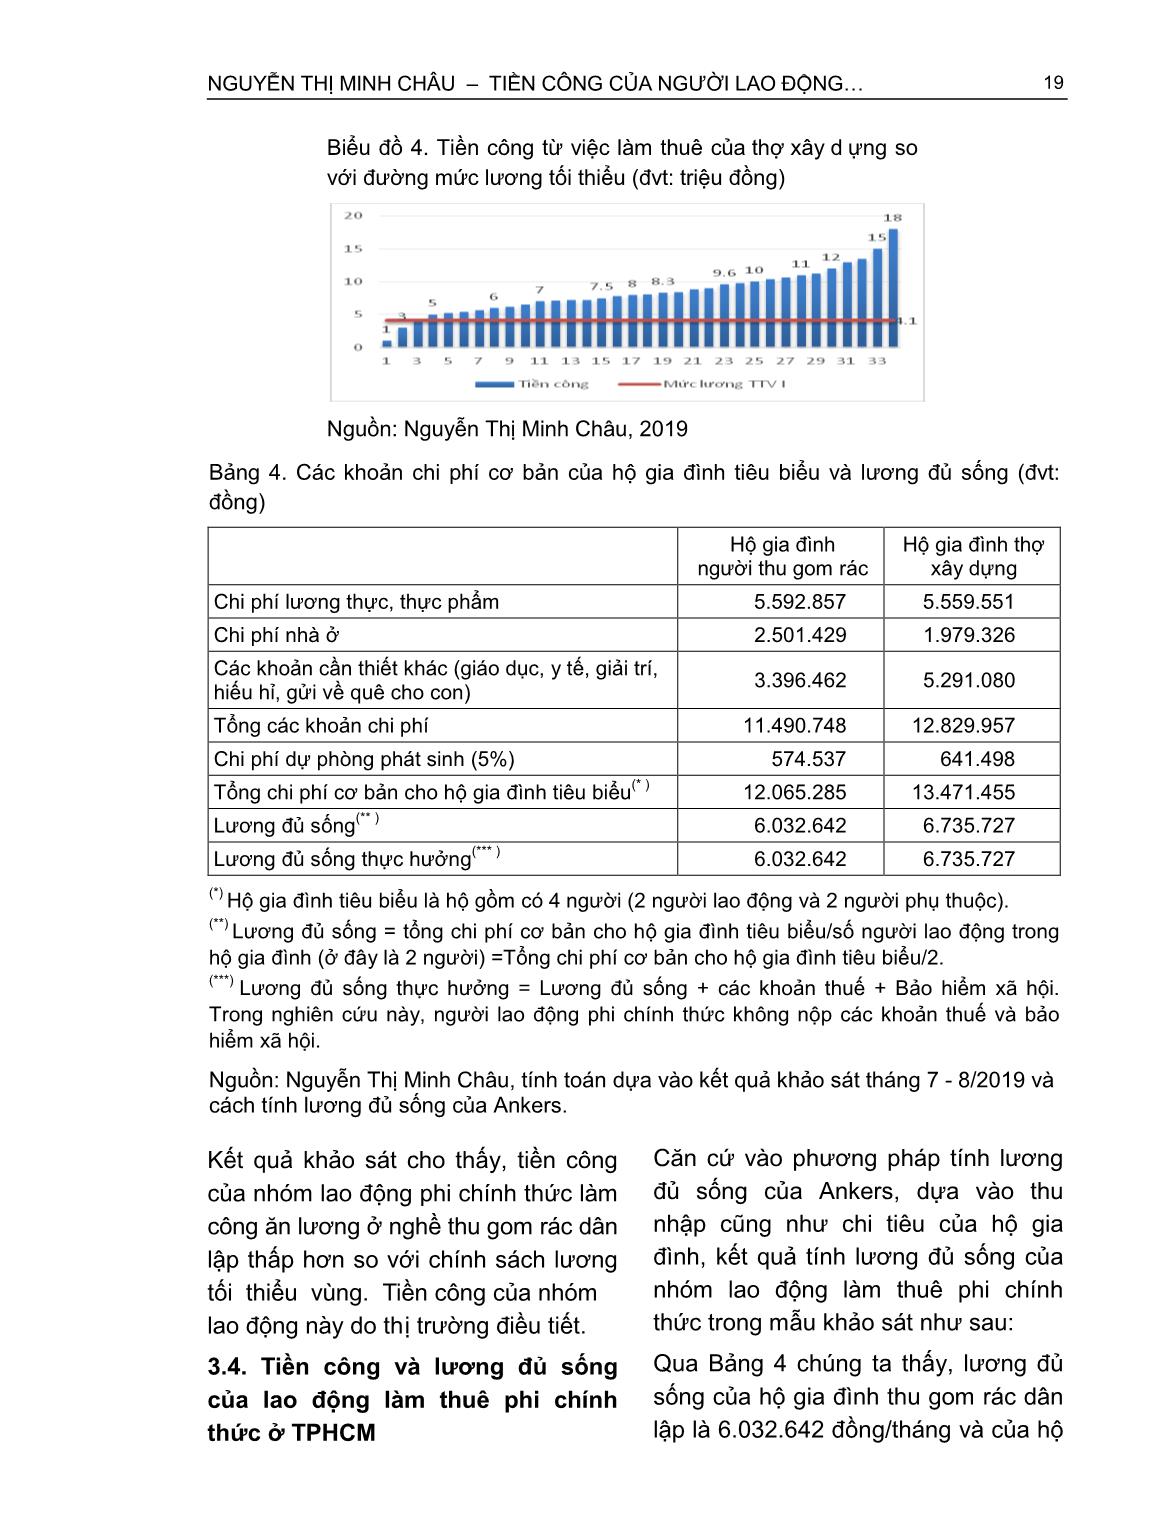 Tiền công của người lao động làm thuê phi chính thức - So sánh với tiền lương tối thiểu vùng và lương đủ sống (Trường hợp người thu gom rác và thợ xây dựng tại thành phố Hồ Chí Minh) trang 8